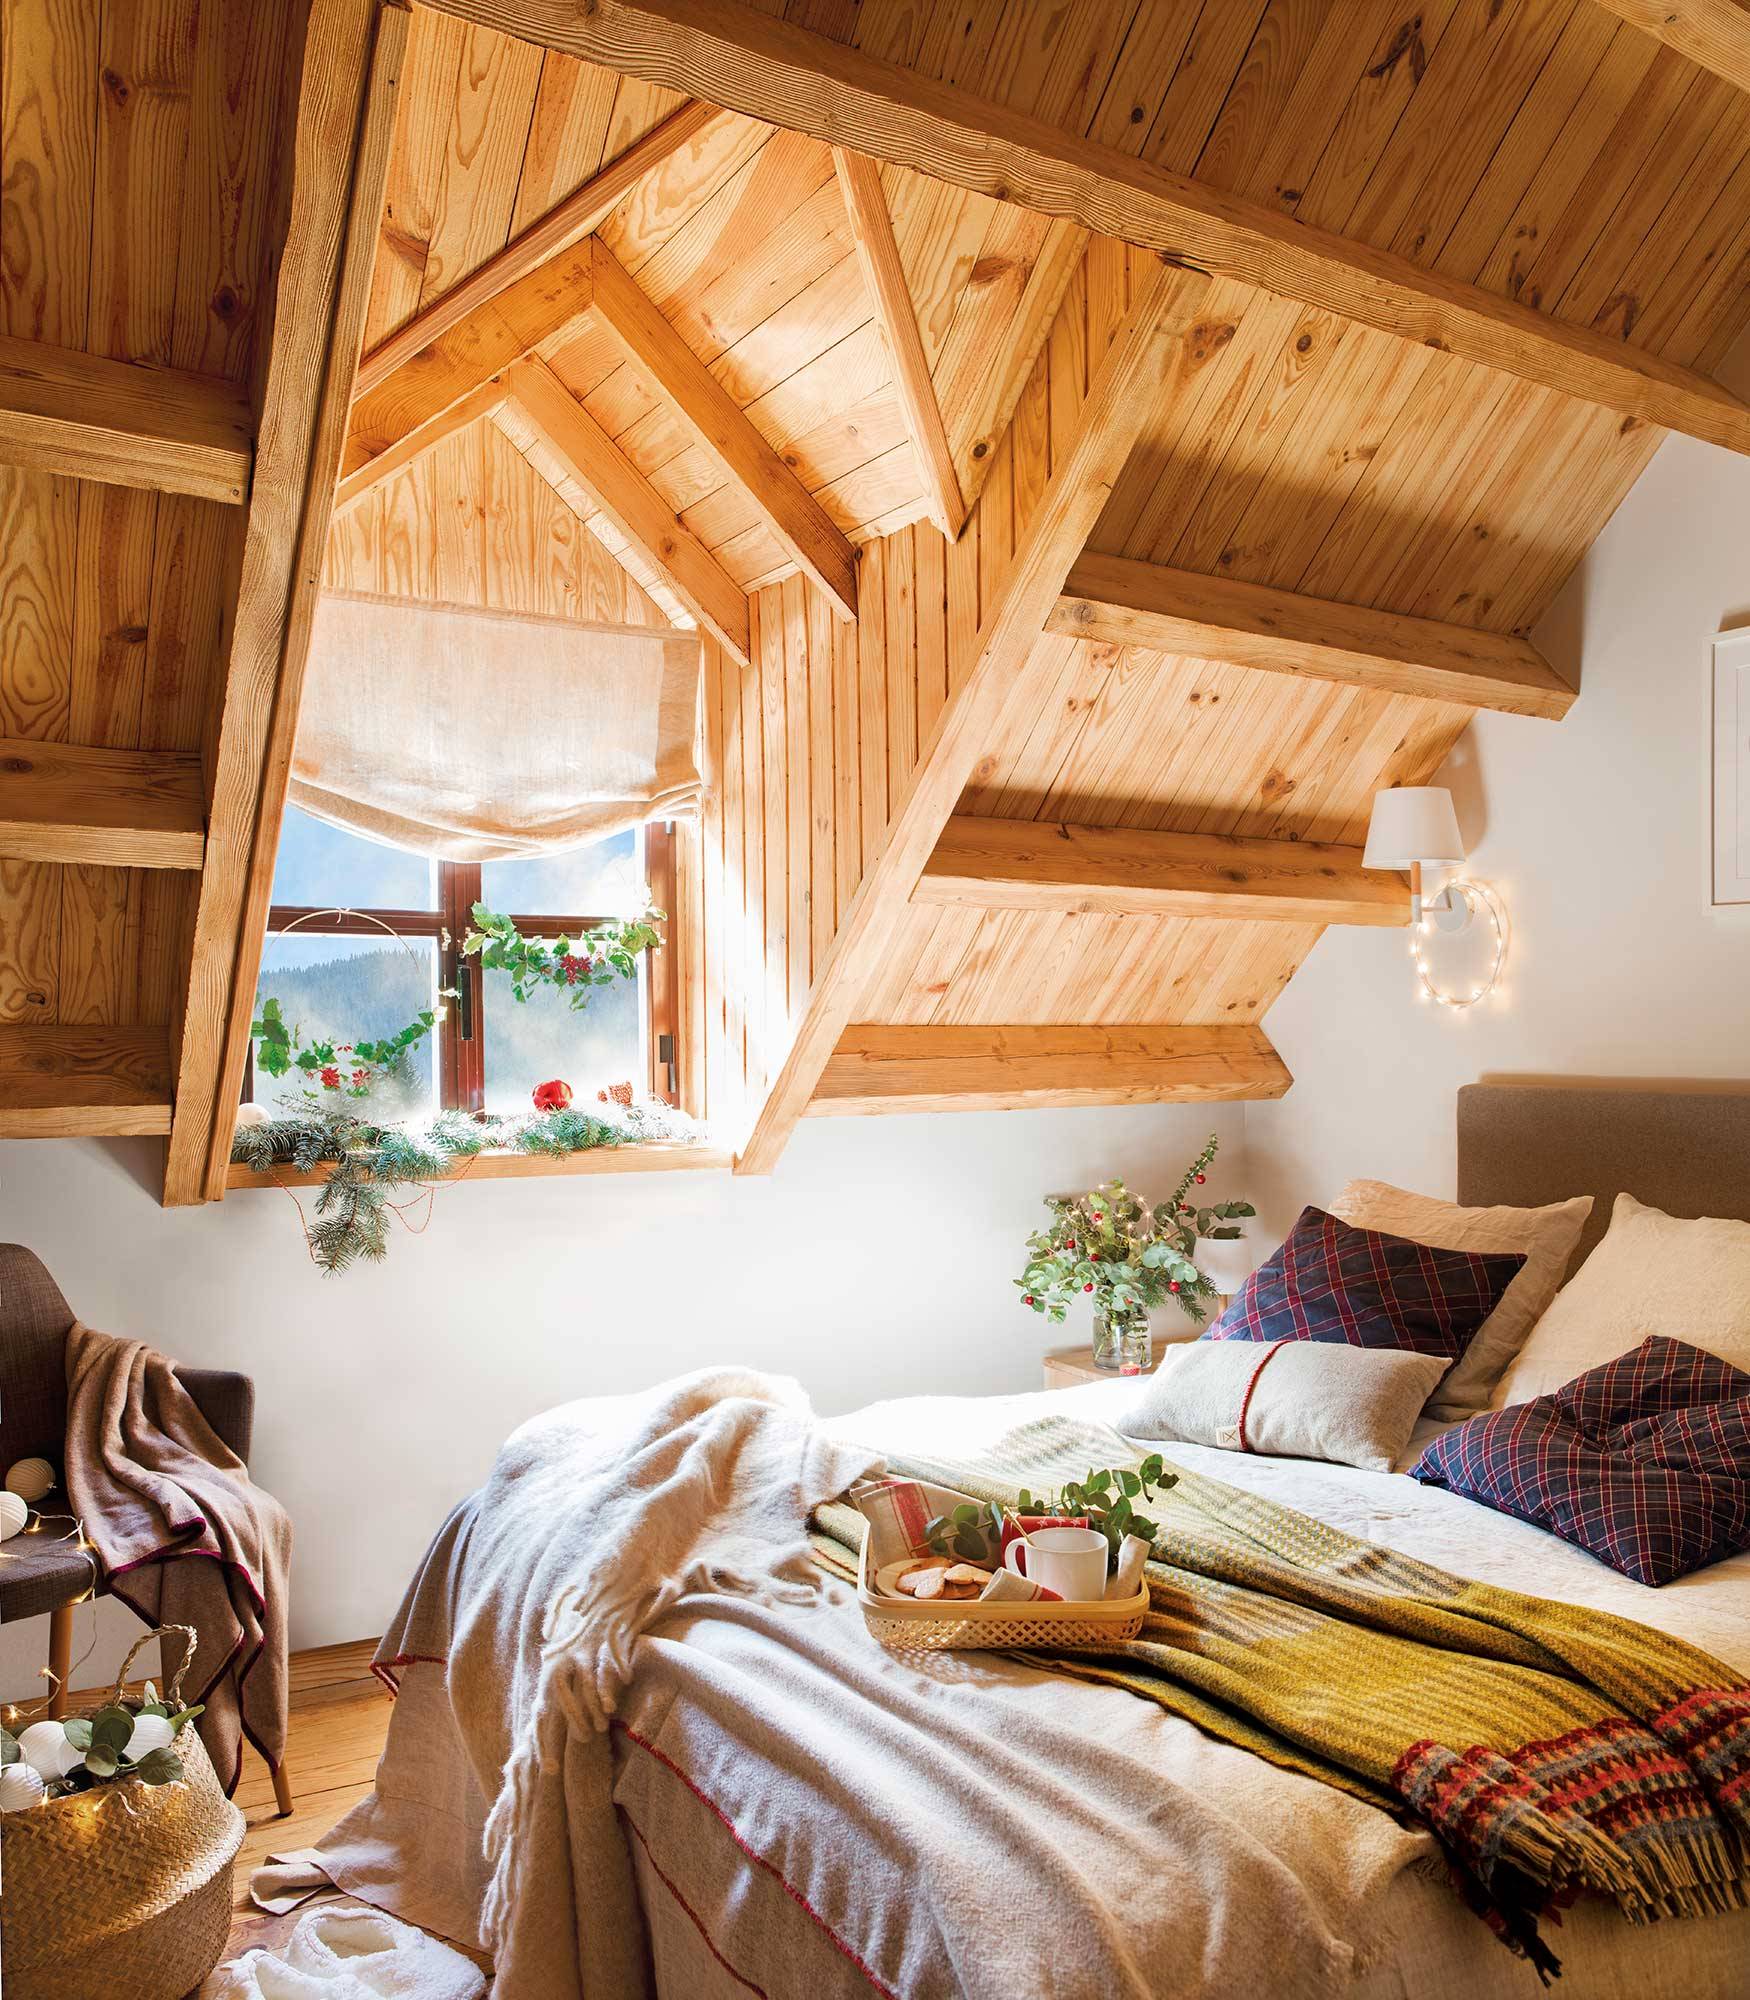 Dormitorio abuhardillado con techo de madera decorado por Navidad.